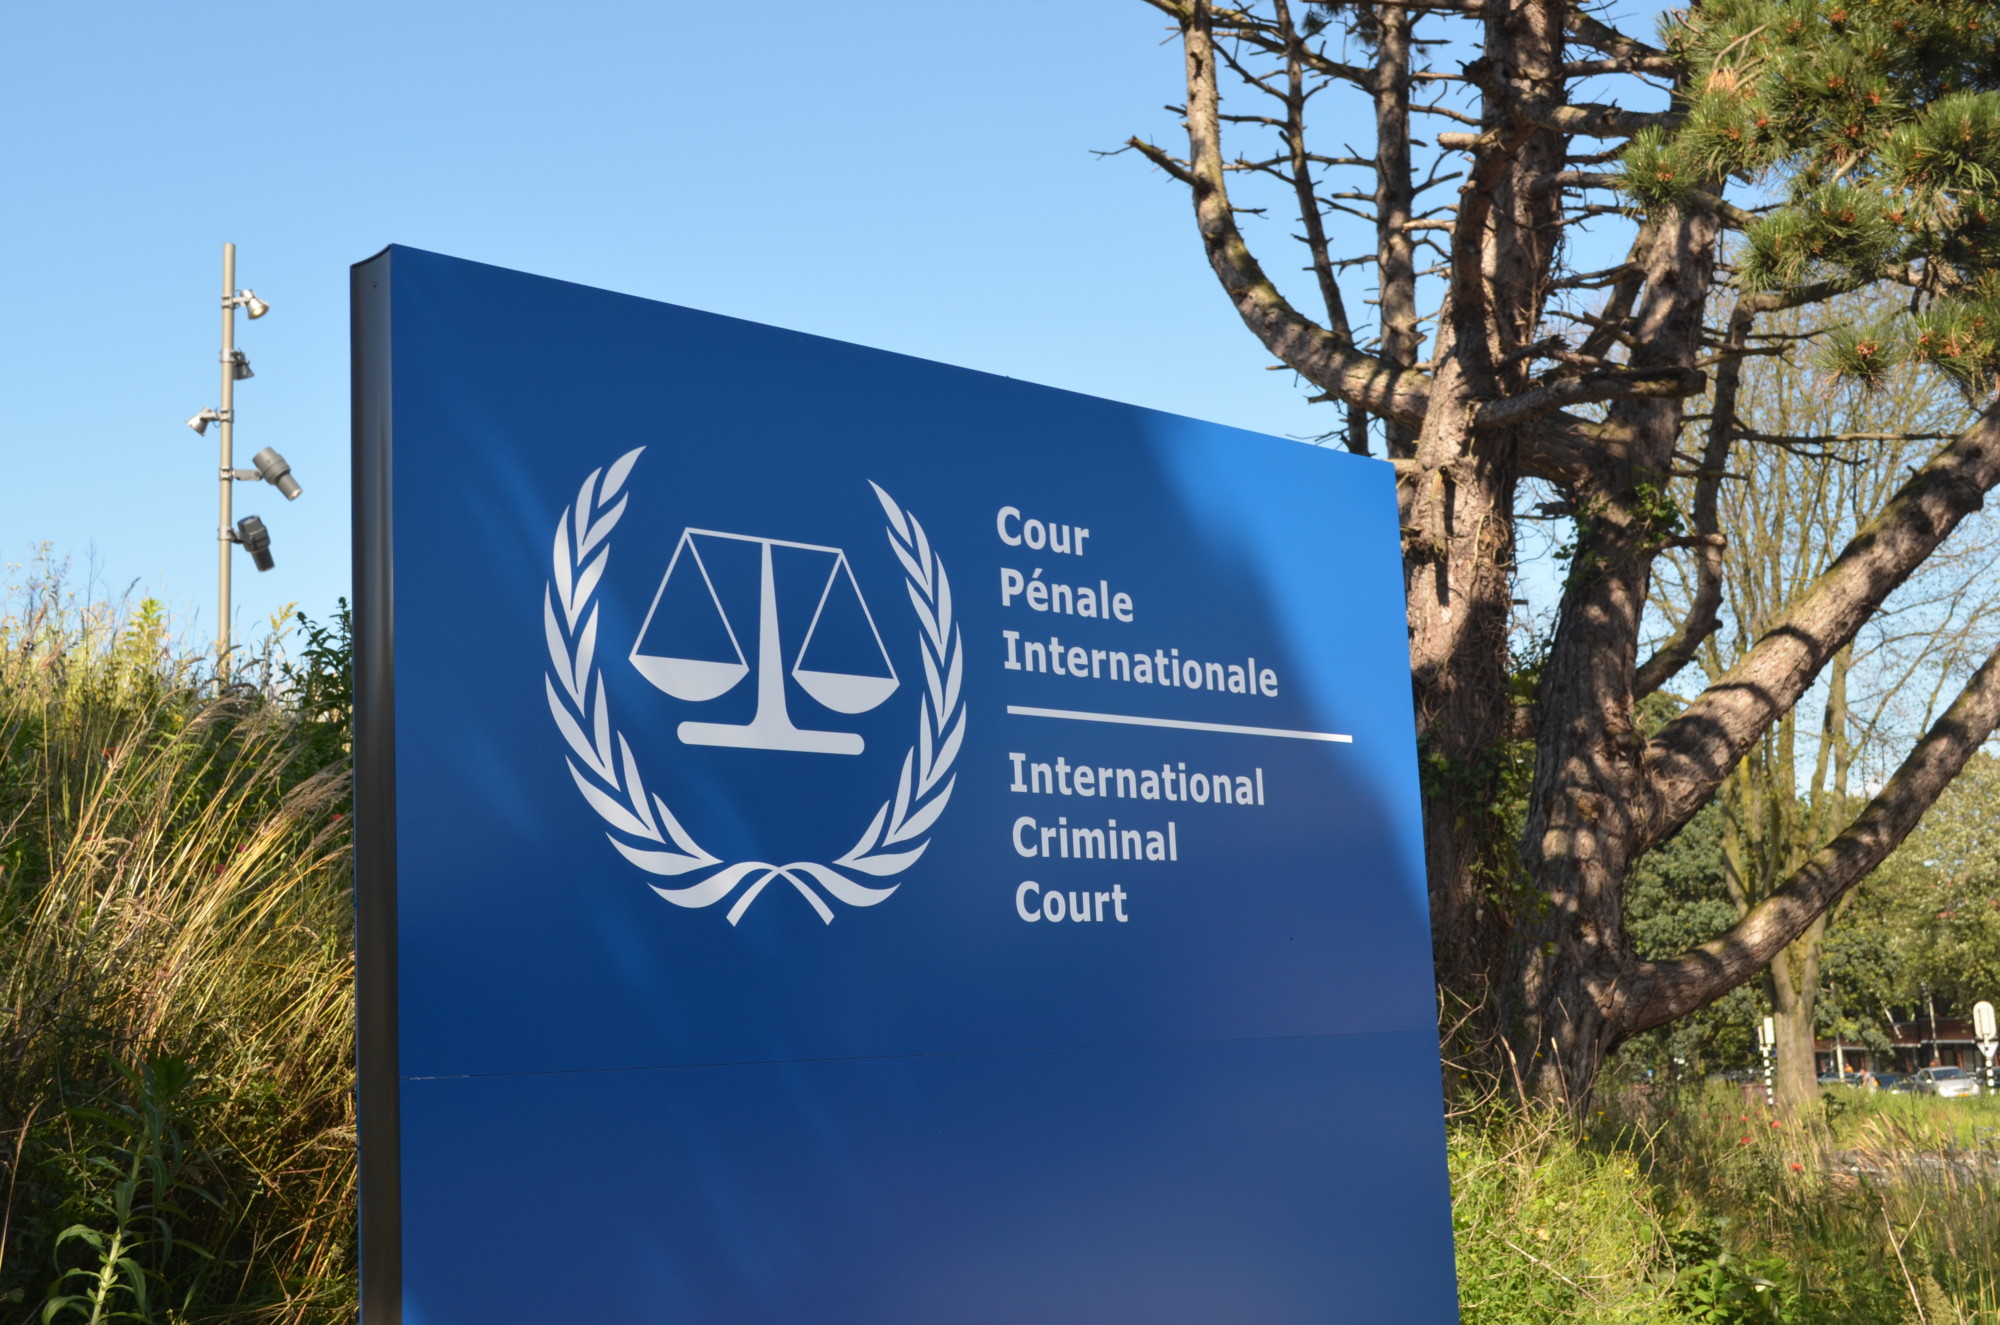 Zum Artikel "„Internationaler Strafgerichtshof – Menschenrechte für alle?“"